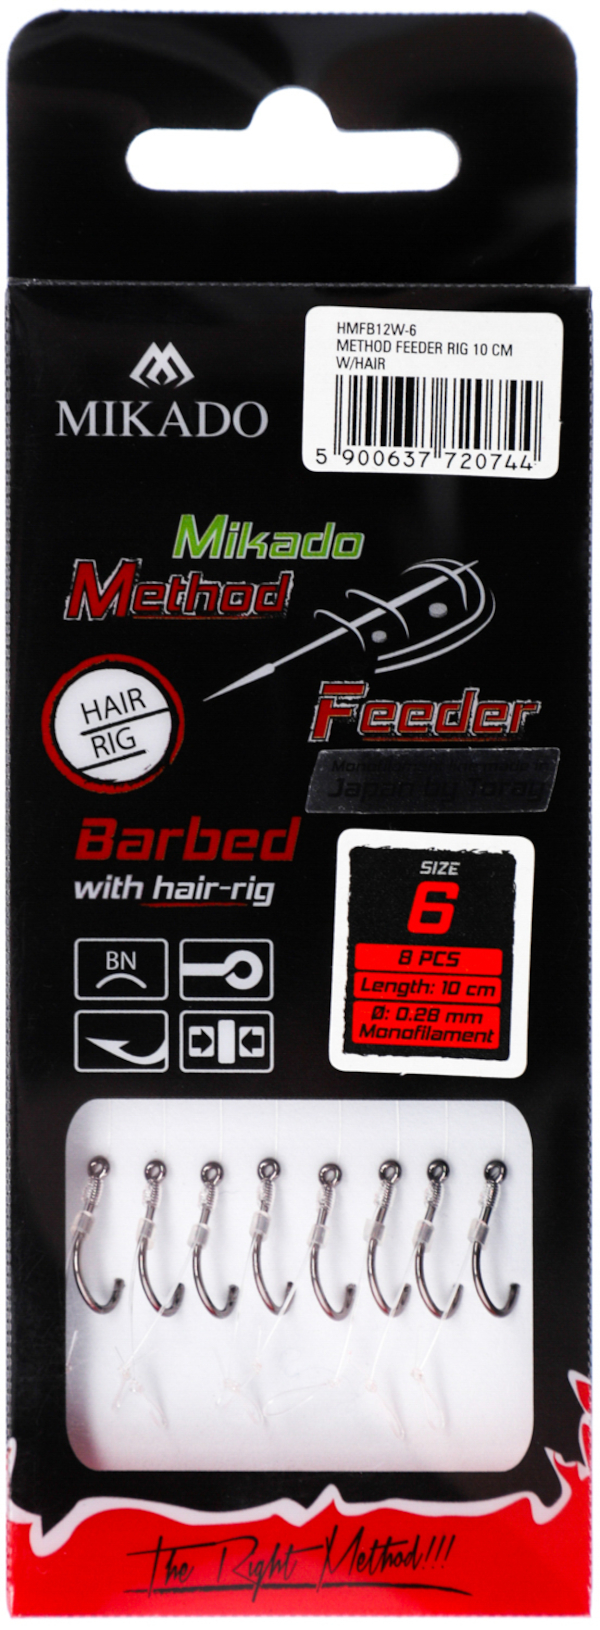 Mikado Método Feeder Rig con Hair 8 piezas